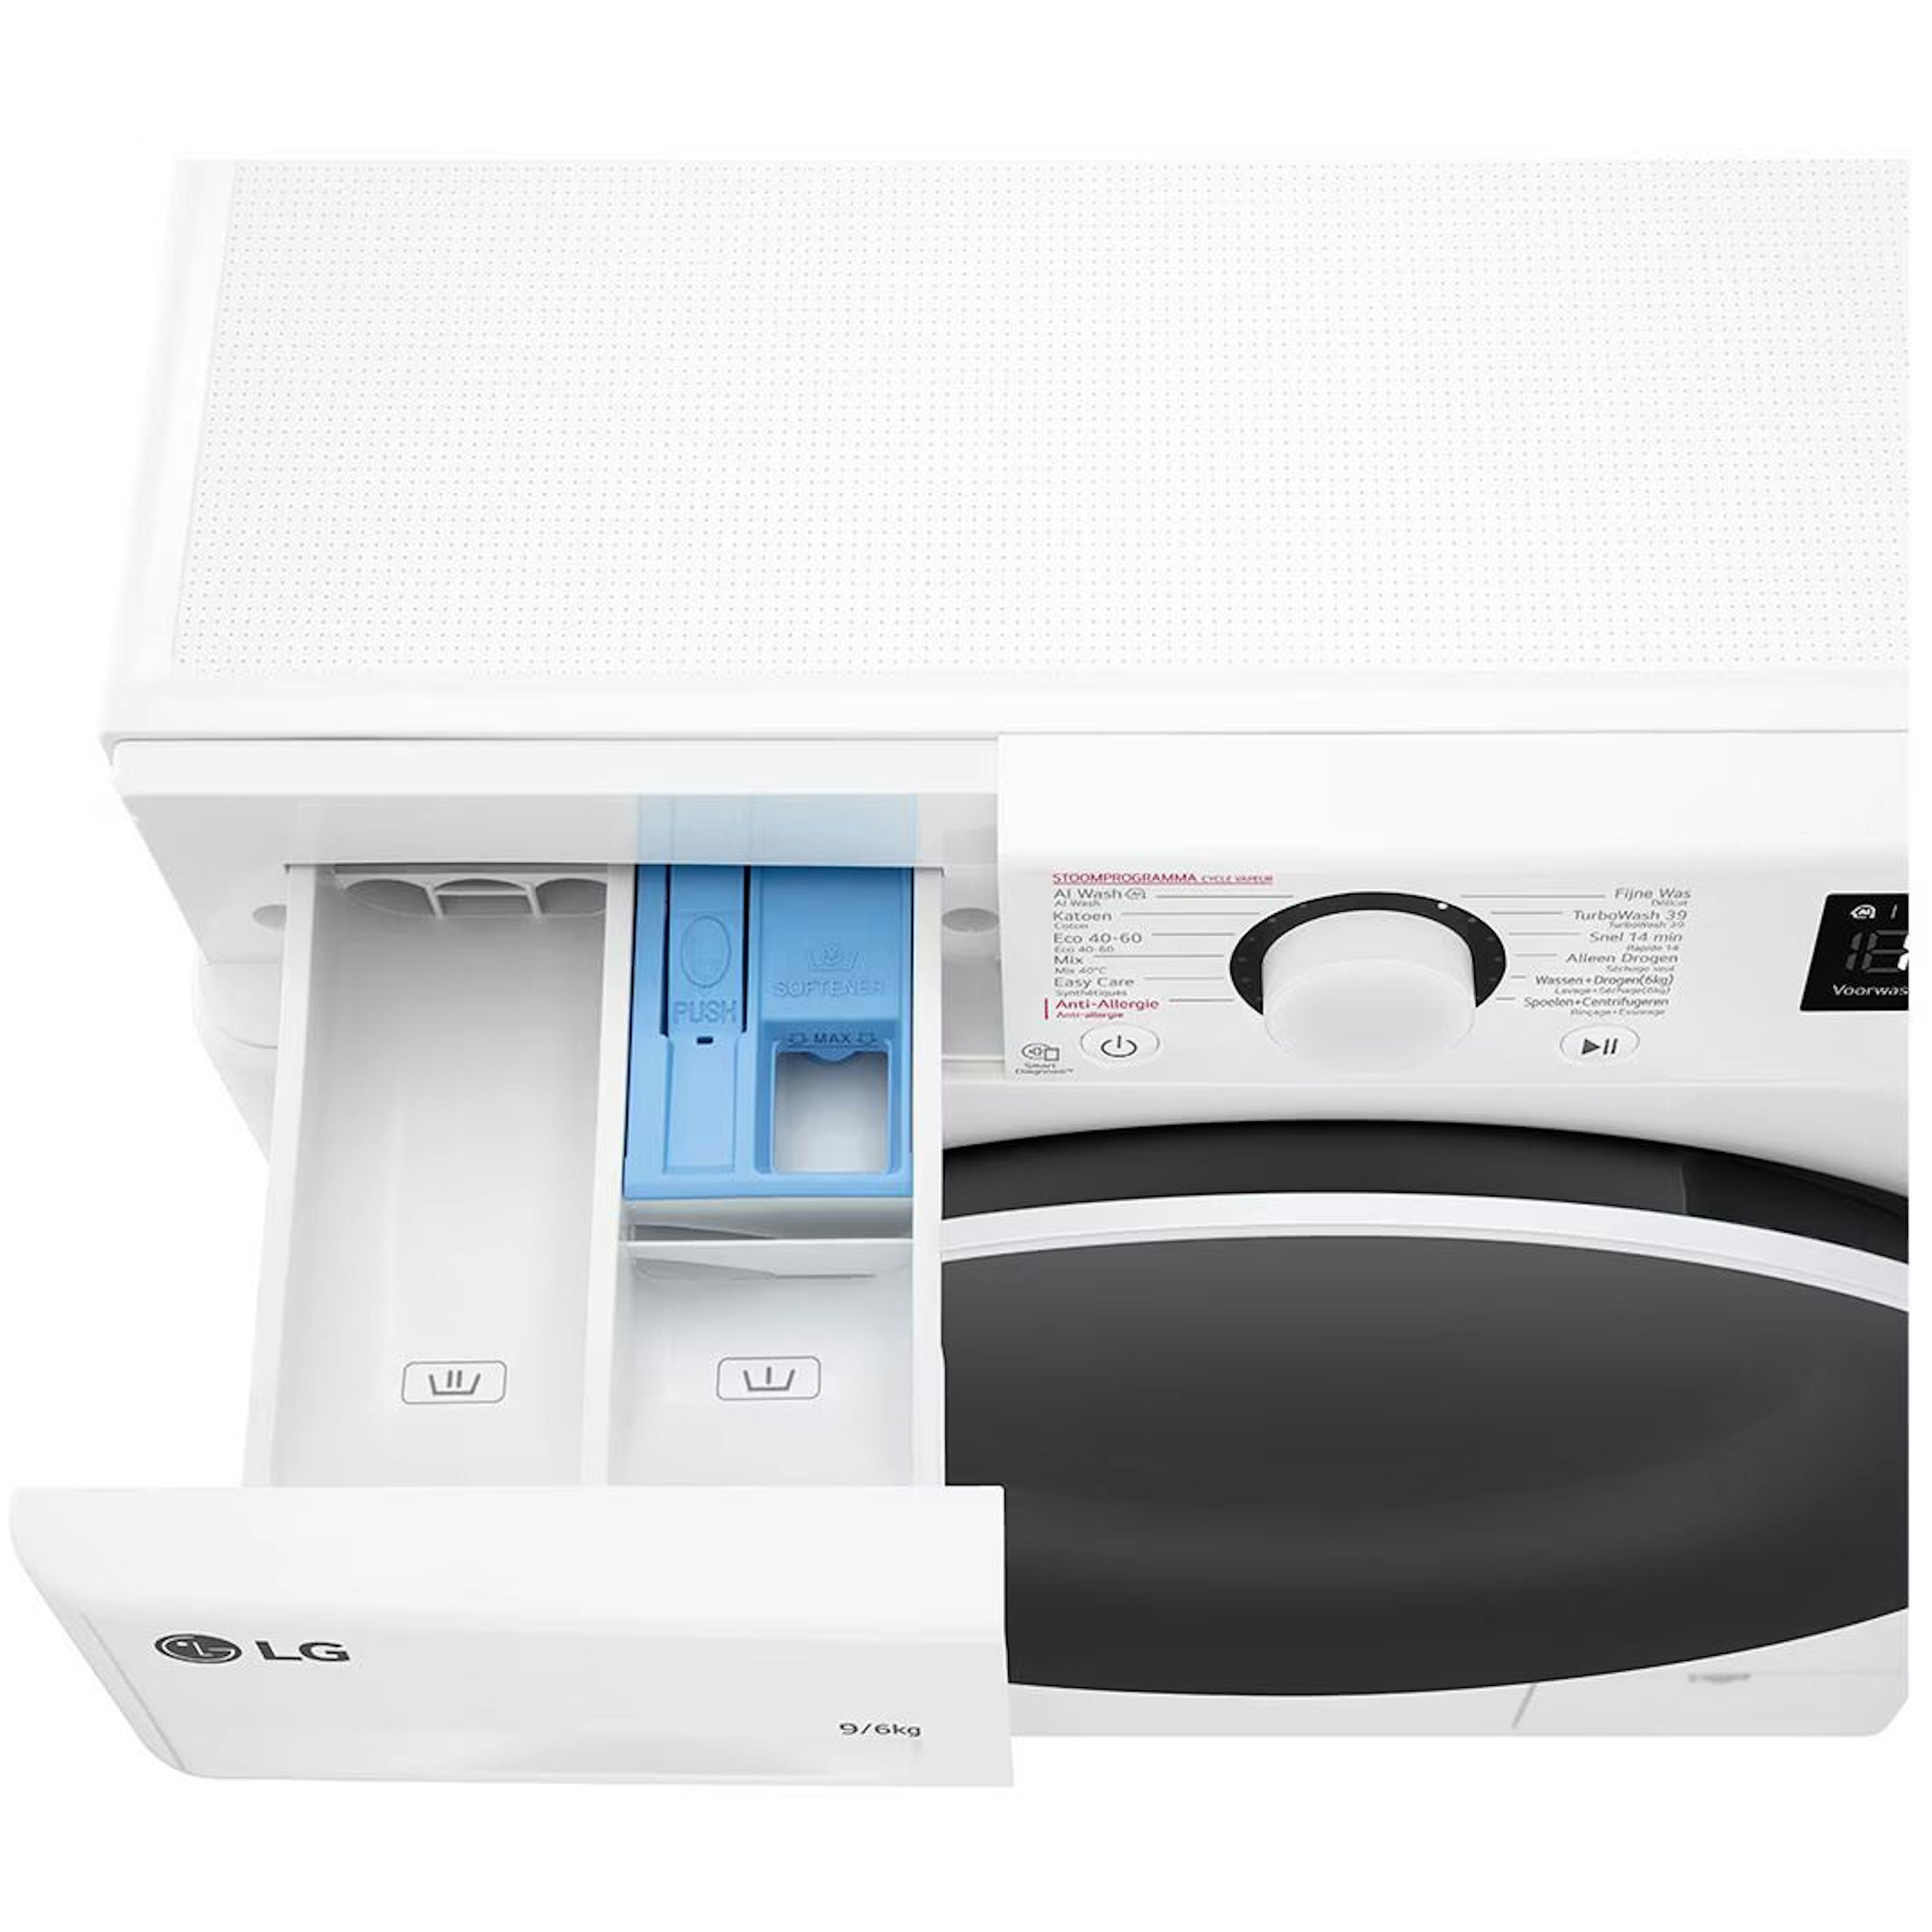 LG wasmachine GD3R509S0 afbeelding 3